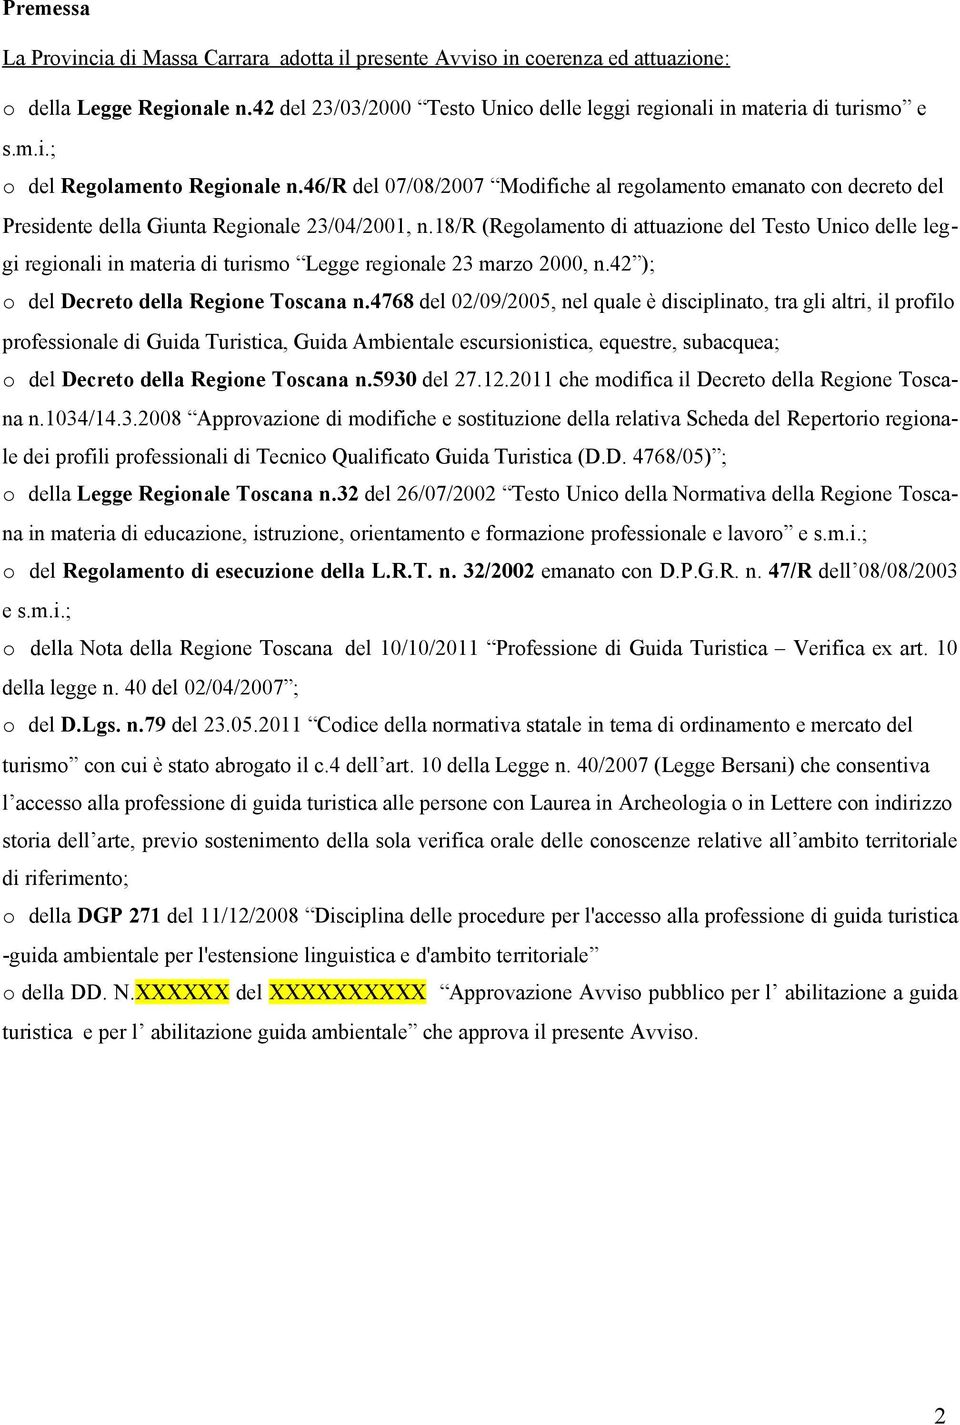 18/r (Regolamento di attuazione del Testo Unico delle leggi regionali in materia di turismo Legge regionale 23 marzo 2000, n.42 ); o del Decreto della Regione Toscana n.